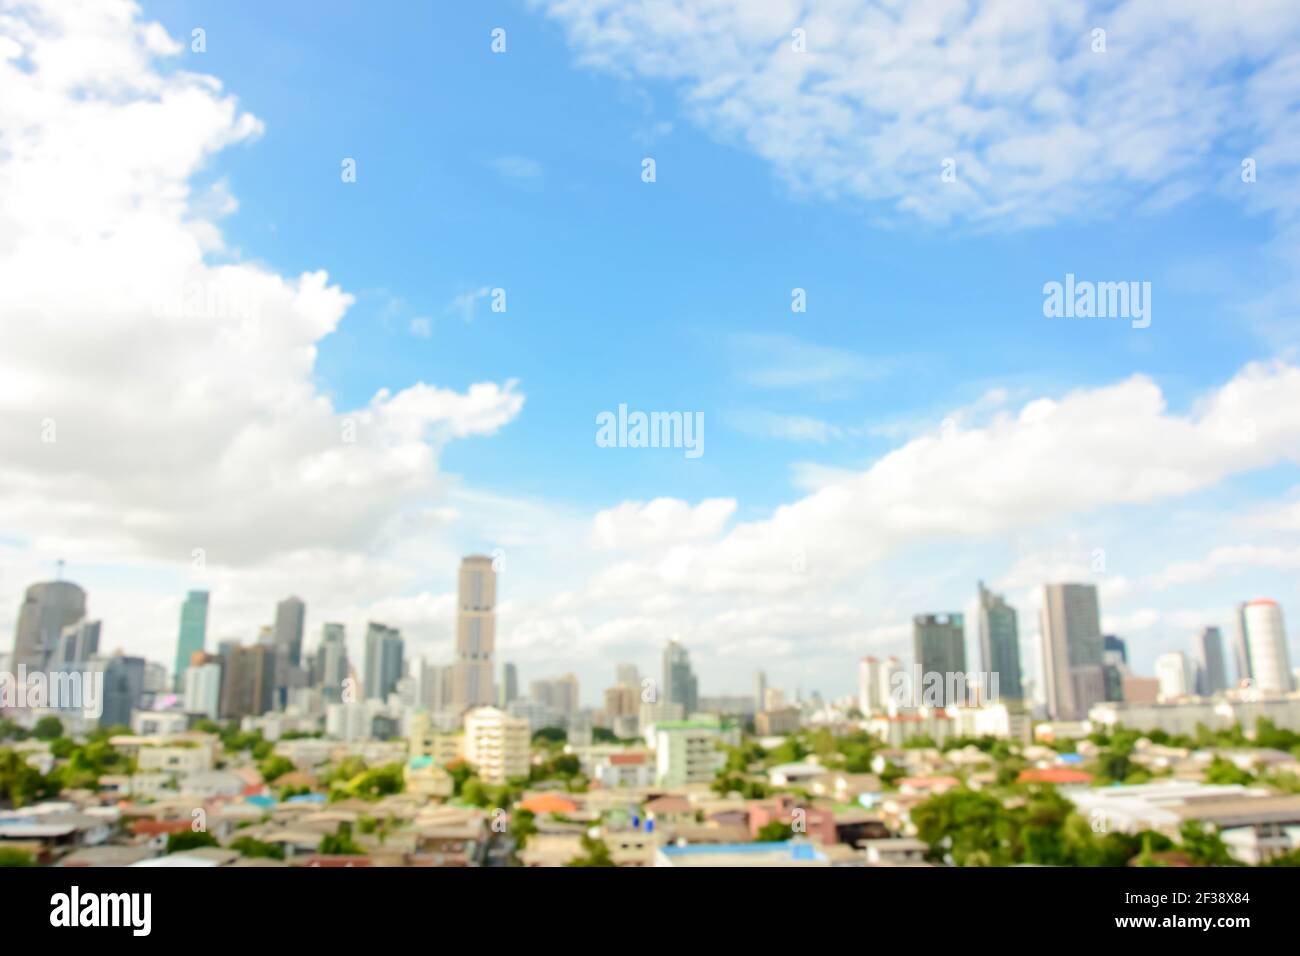 Imagen borrosa de edificios en la ciudad con cielo azul y nubes como fondo - Bankgkok, Tailandia Foto de stock